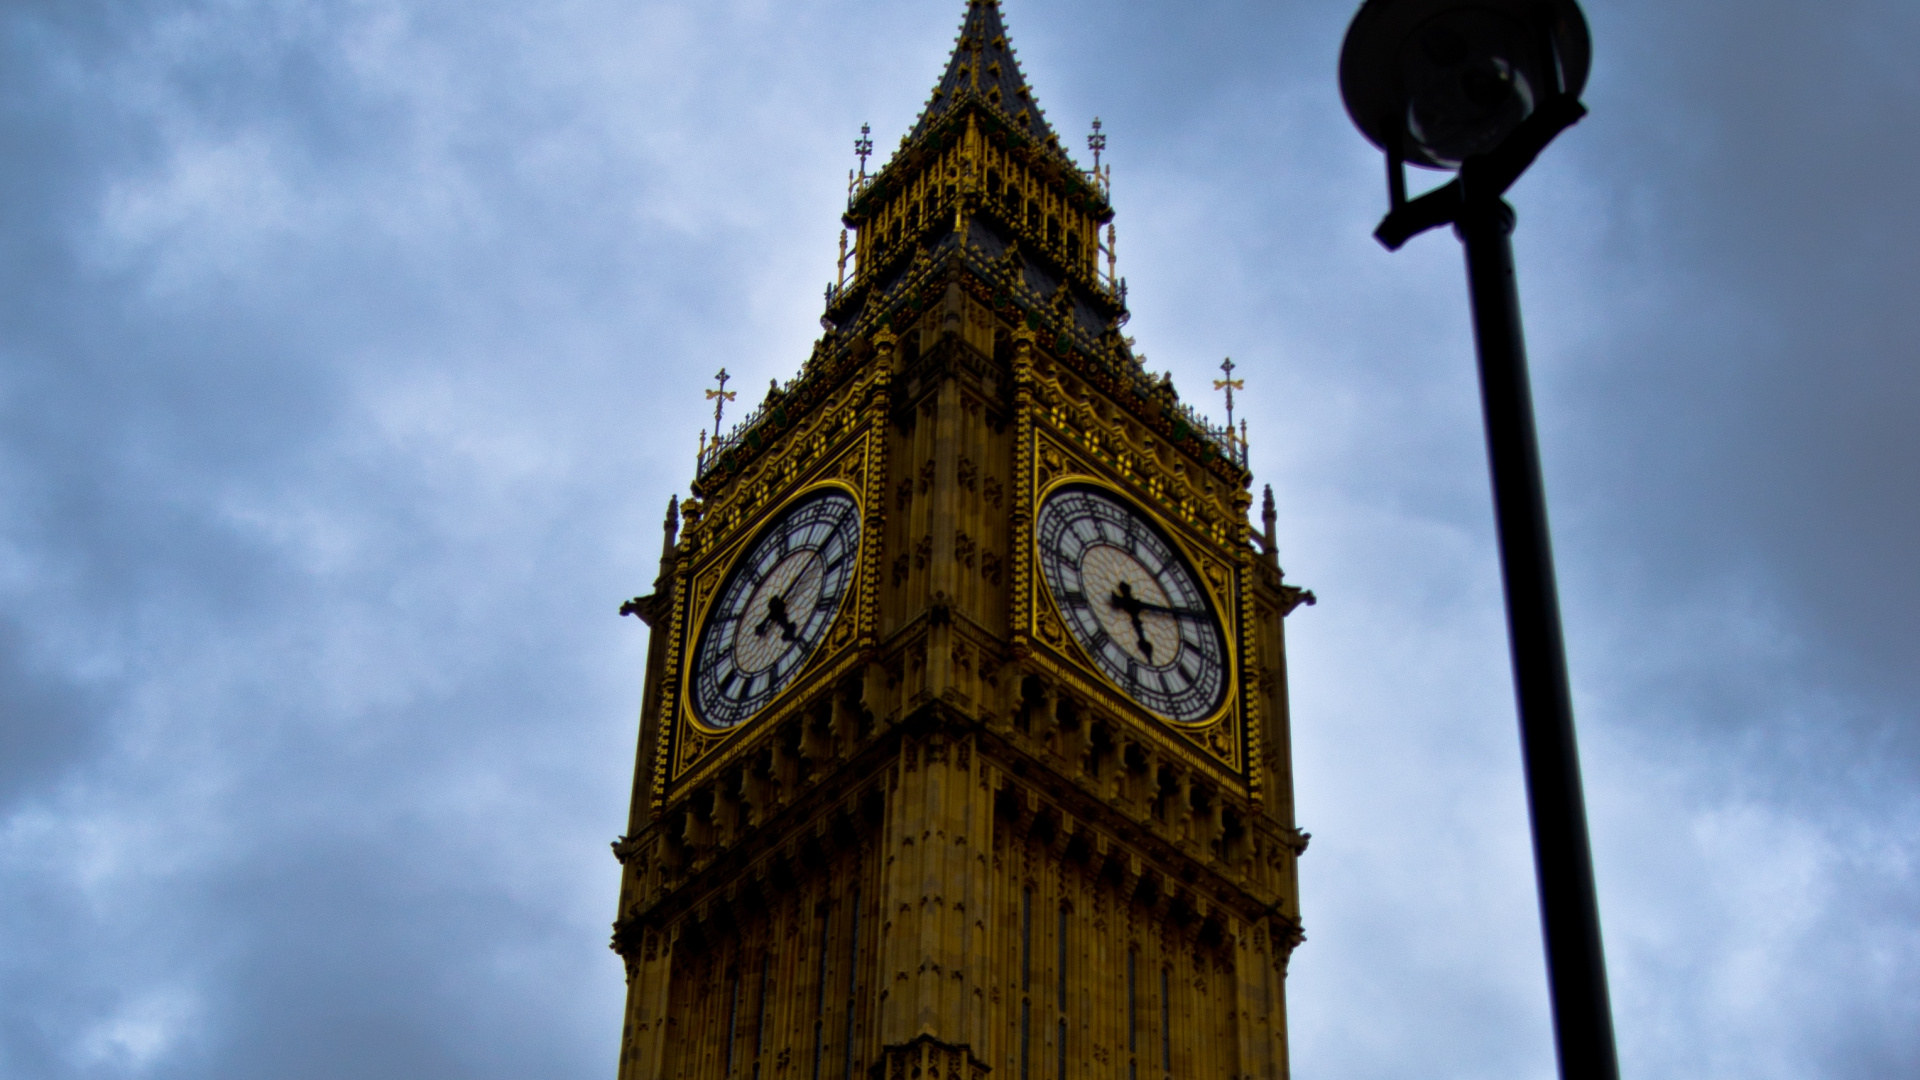 Часовая башня Вестминстерского дворца